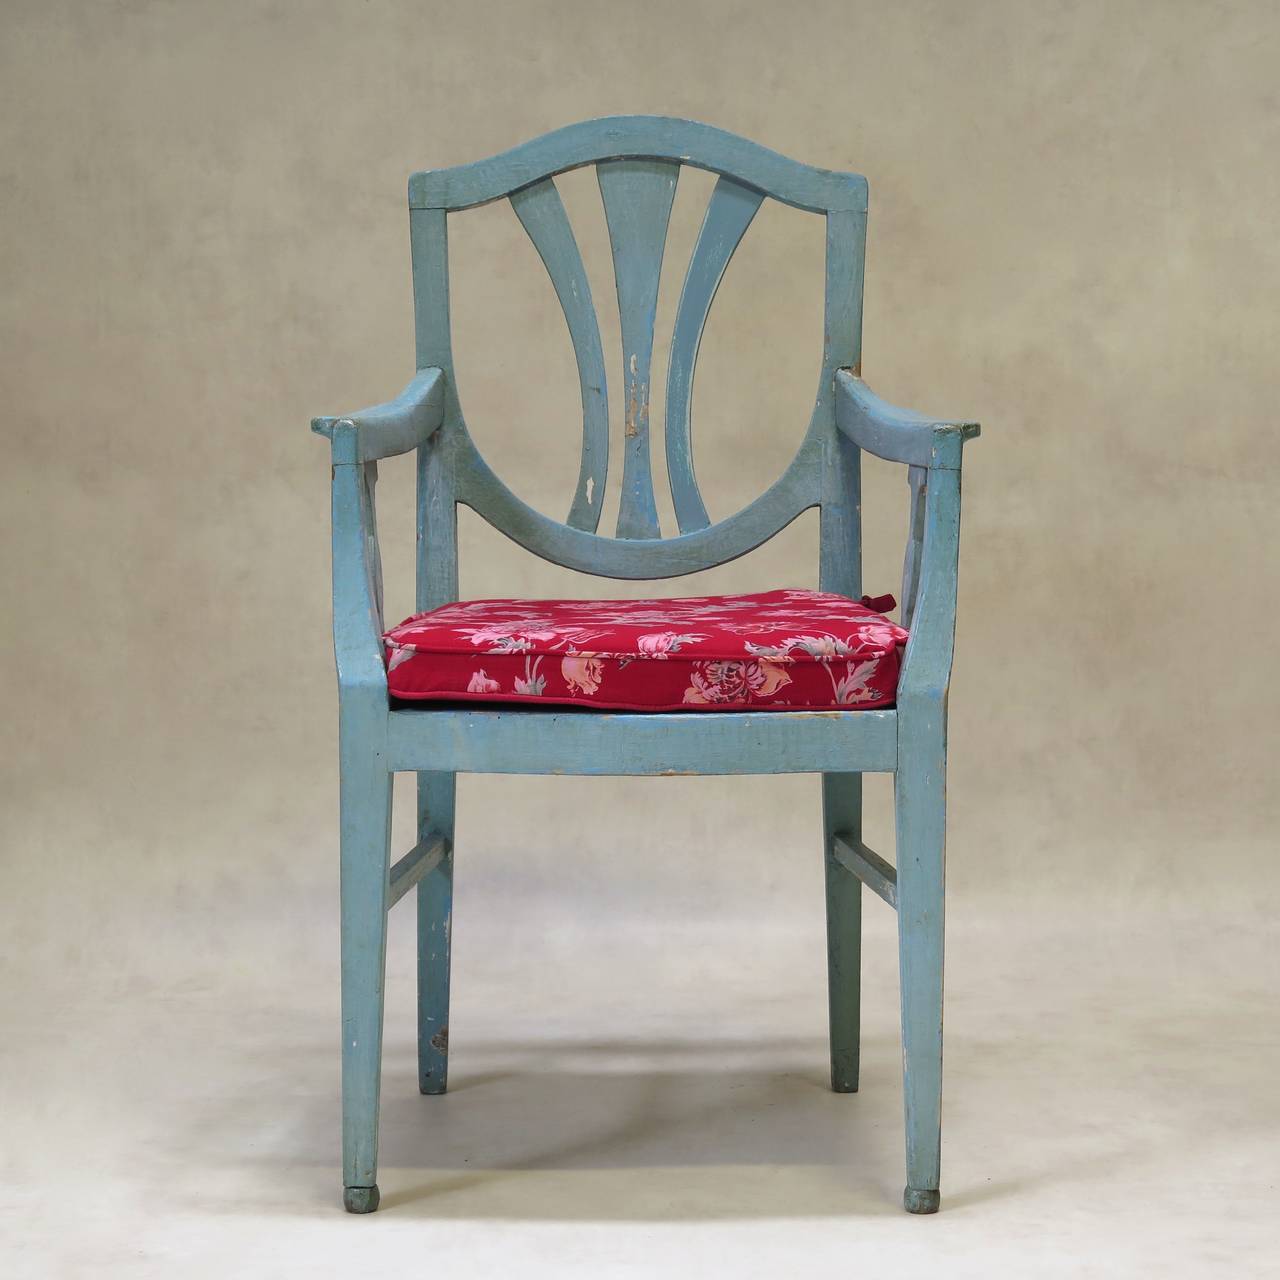 Charmant ensemble de deux chaises et deux fauteuils à dossier en forme de bouclier, peints en bleu œuf de mer. Les pattes avant se terminent par des pieds en boule. Les coussins d'assise sont recouverts d'un joli coton imprimé, avec un motif floral